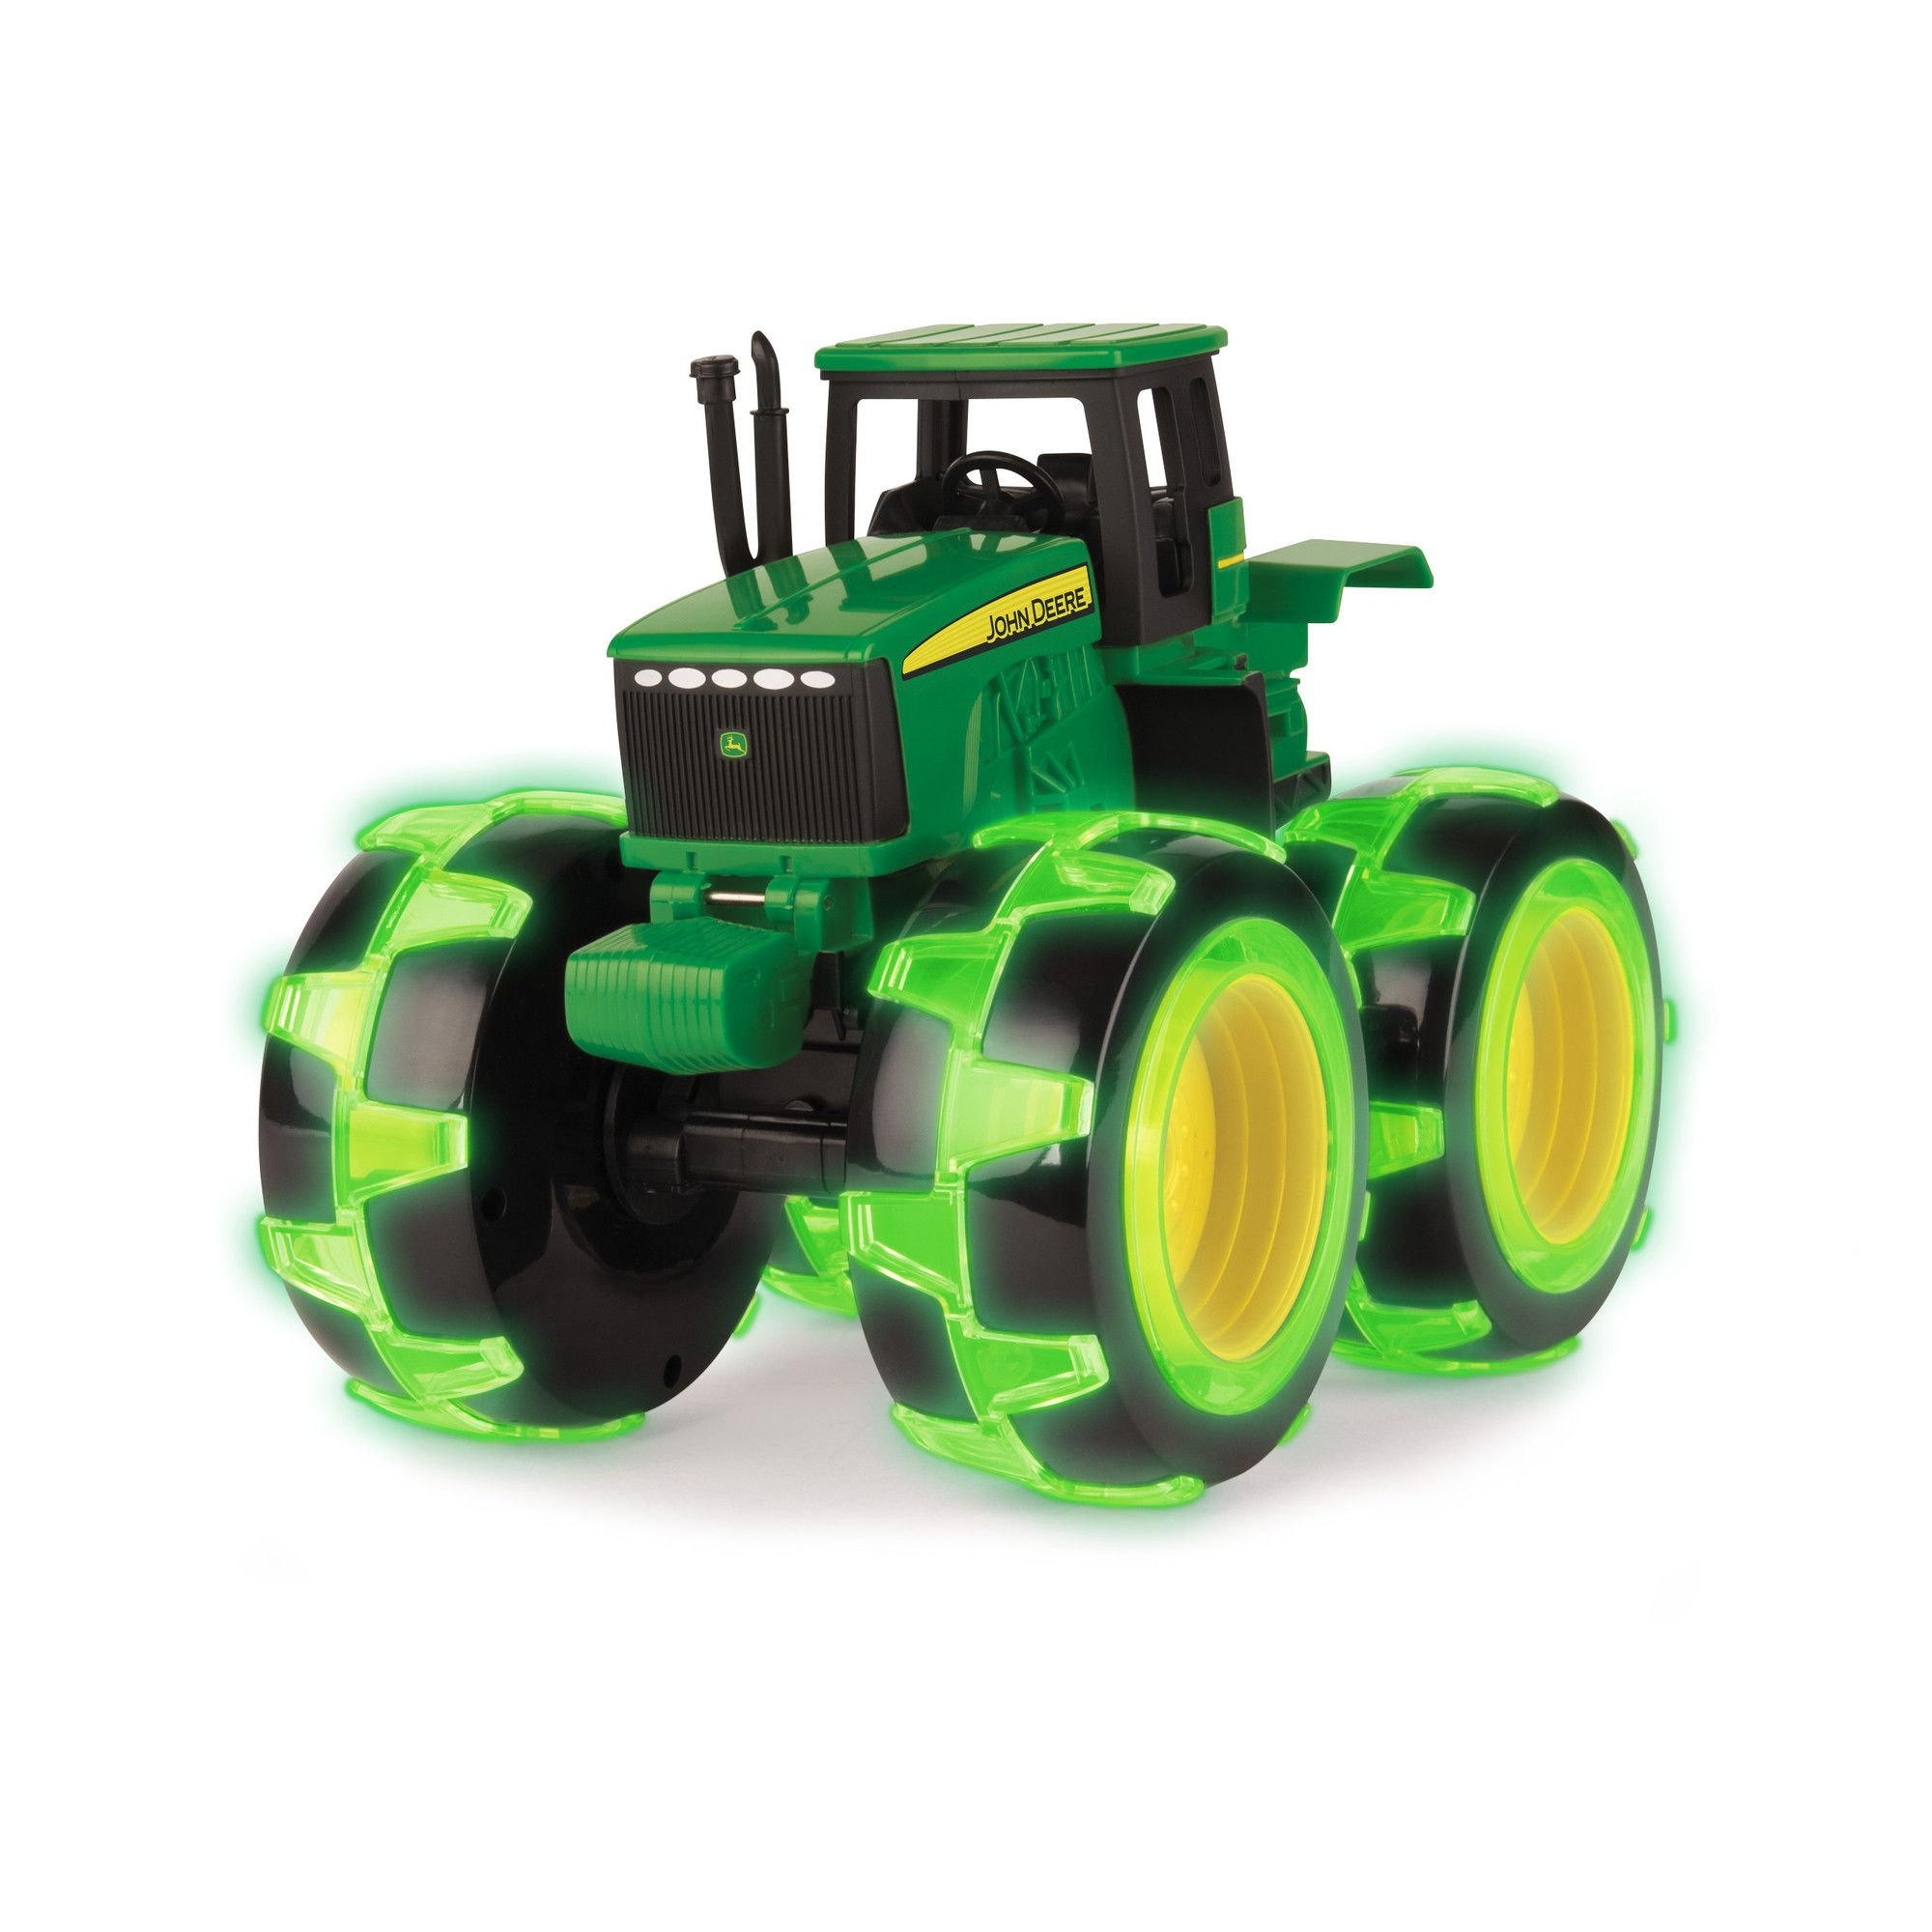 Grüner und schwarzer ferngesteuerter Traktor